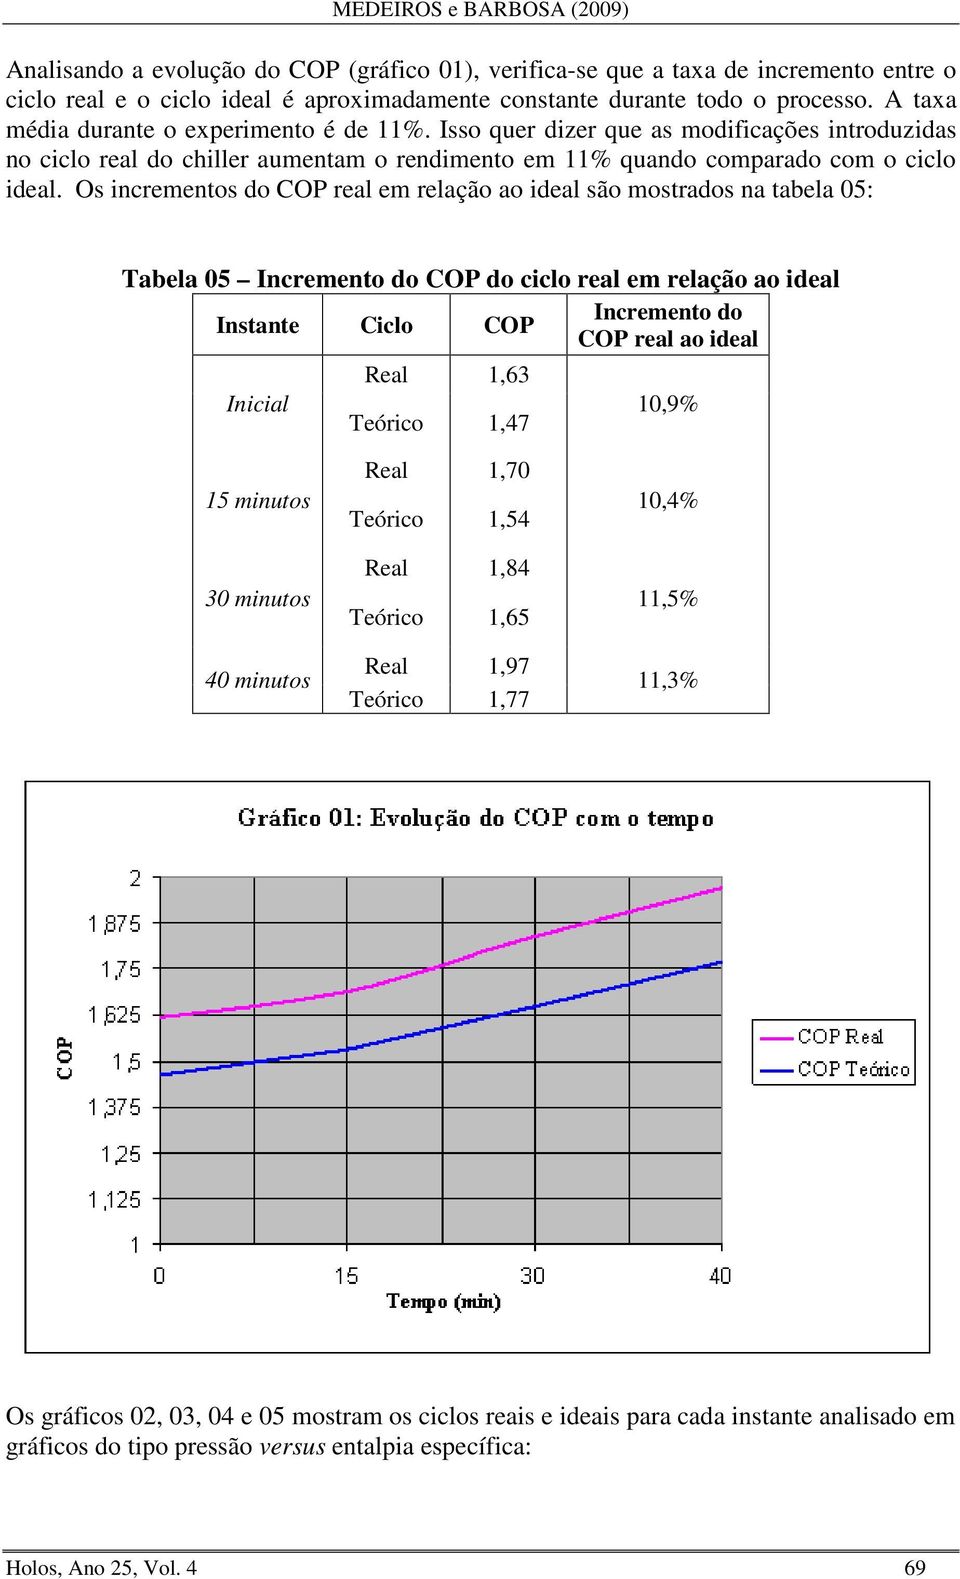 Os incrementos do COP real em relação ao ideal são mostrados na tabela 05: Tabela 05 Incremento do COP do ciclo real em relação ao ideal Incremento do Instante Ciclo COP COP real ao ideal Inicial